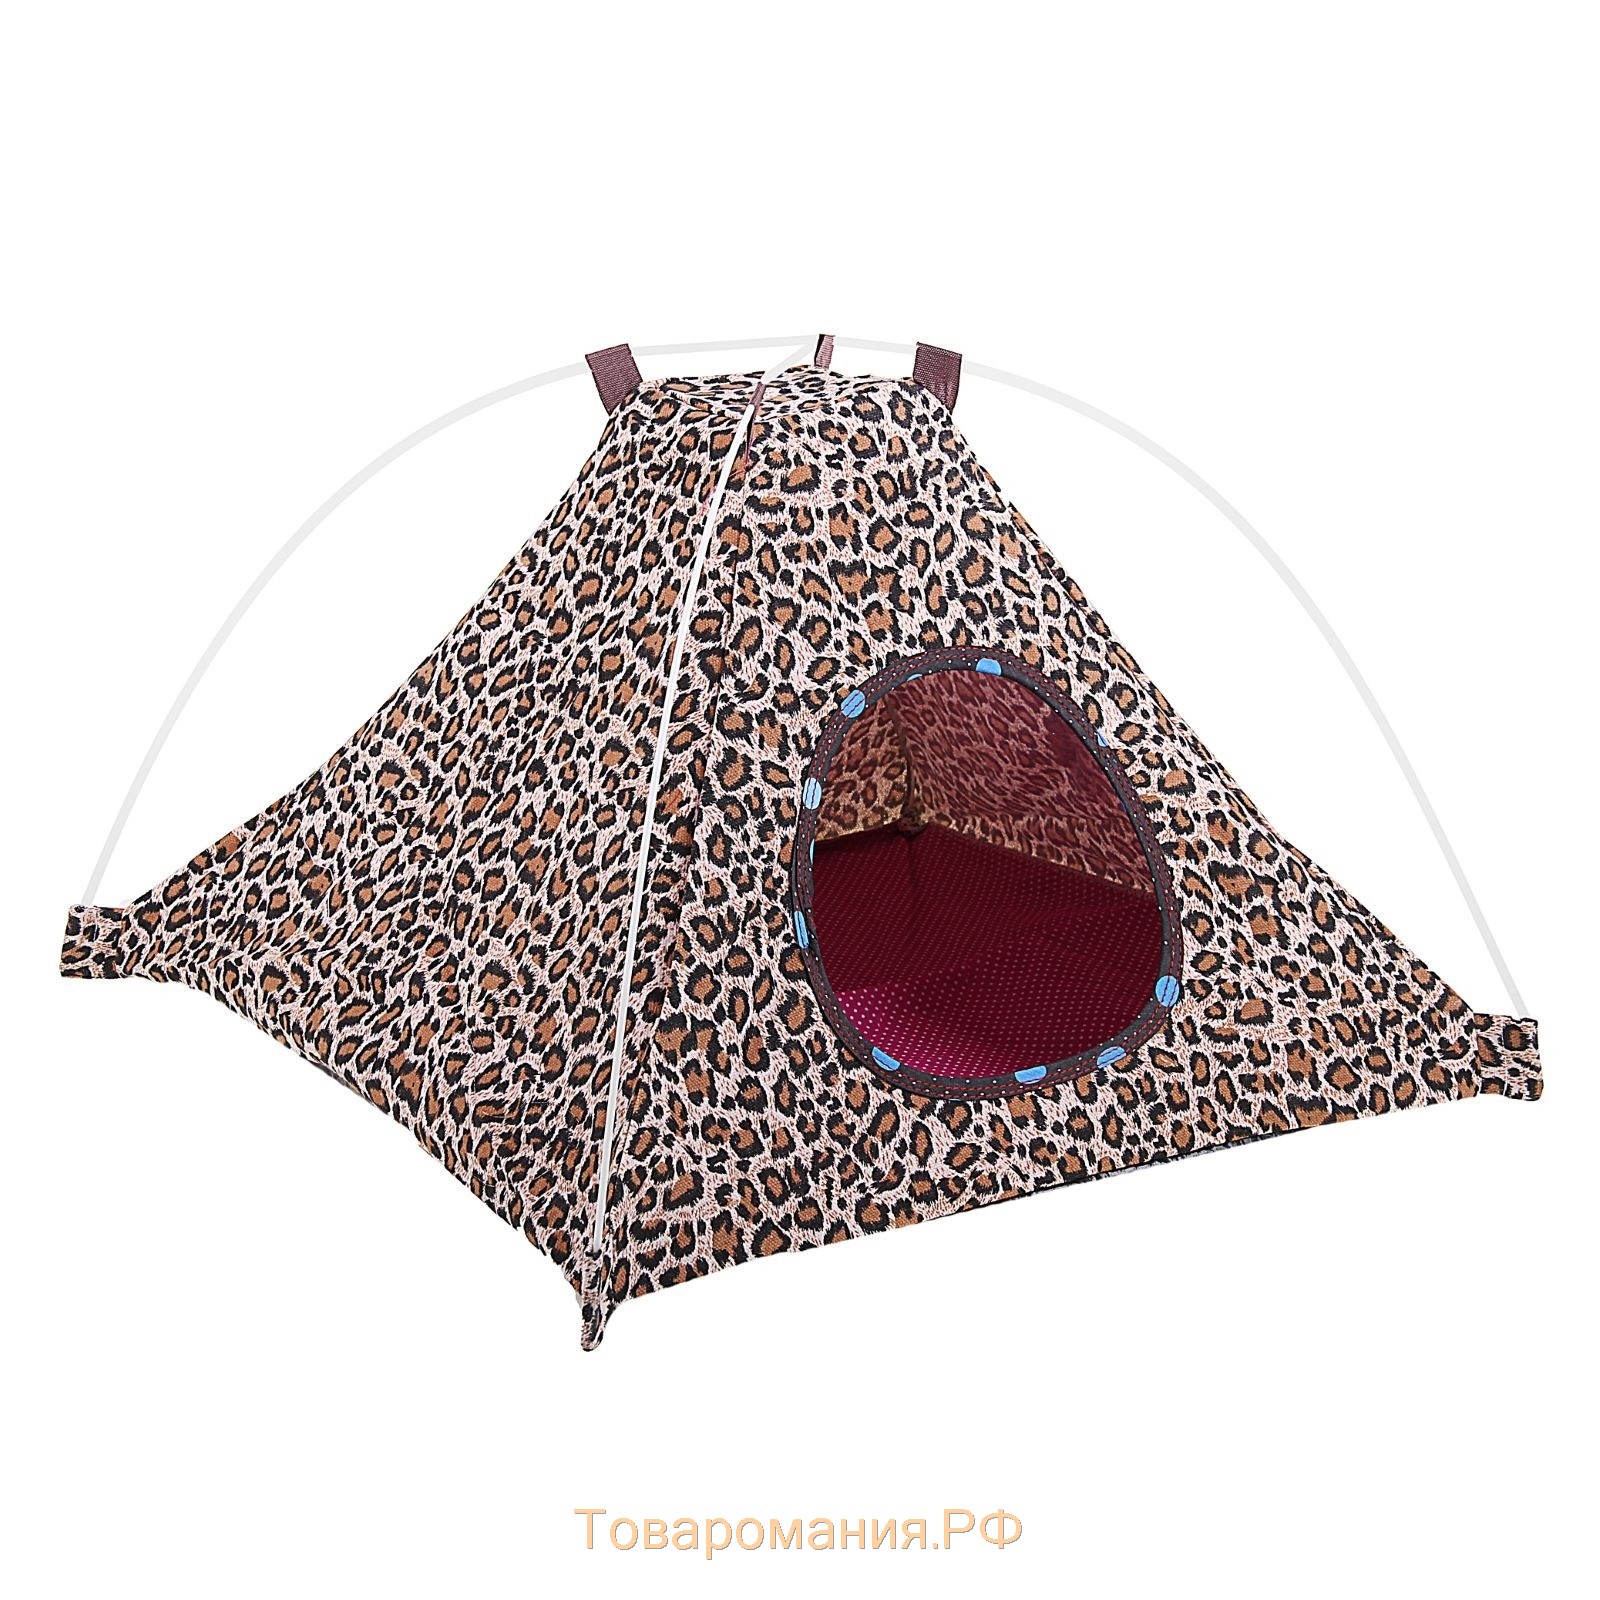 Домик-палатка складной, 44 х 44 х 30 см, микс цветов